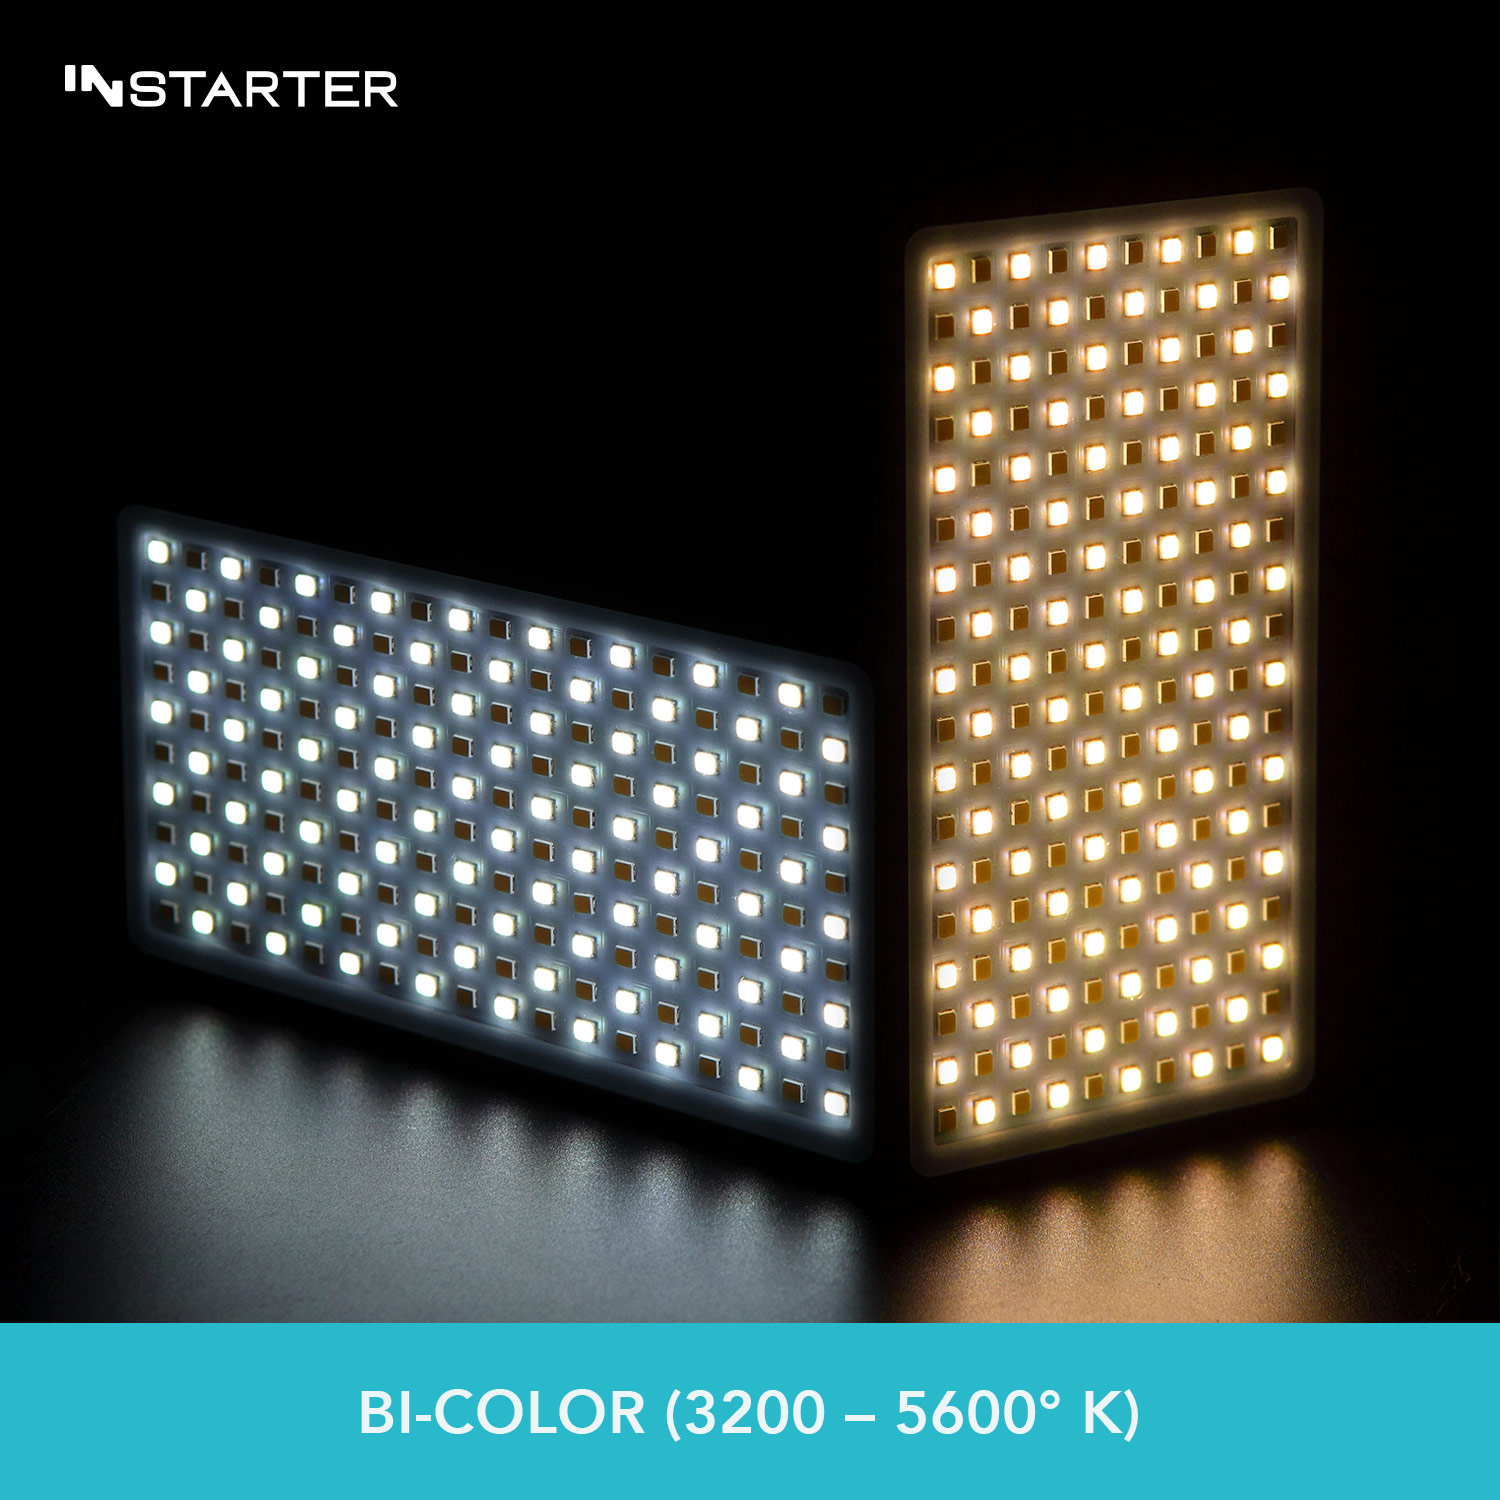 INStarter Spectar Bi-Color Flex P-Pocket 1.0 Bi-Color